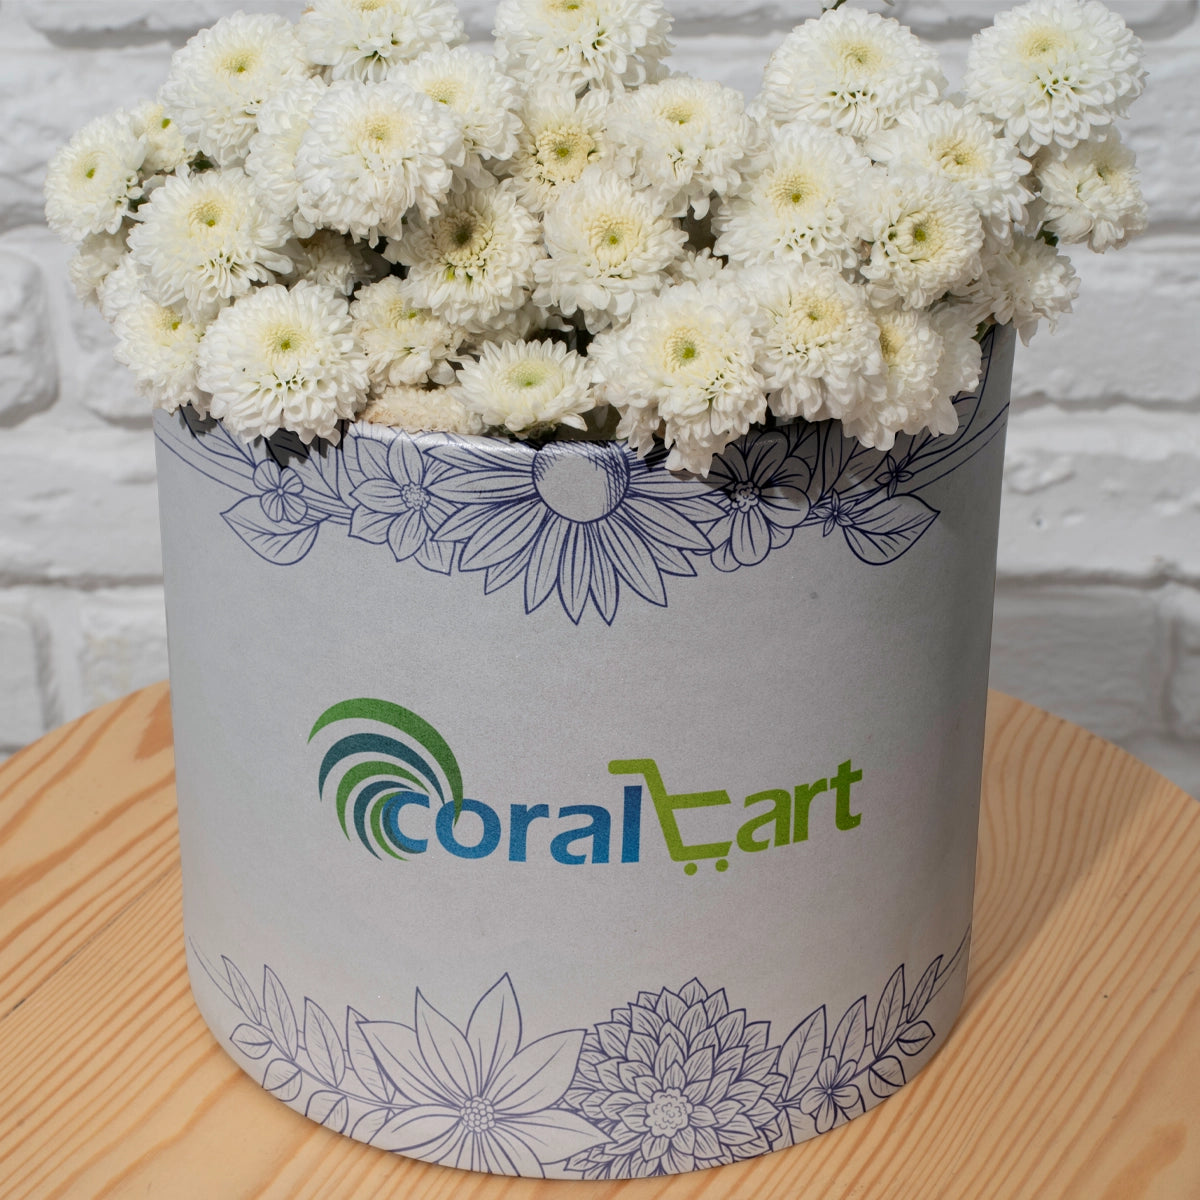 coralcart.com